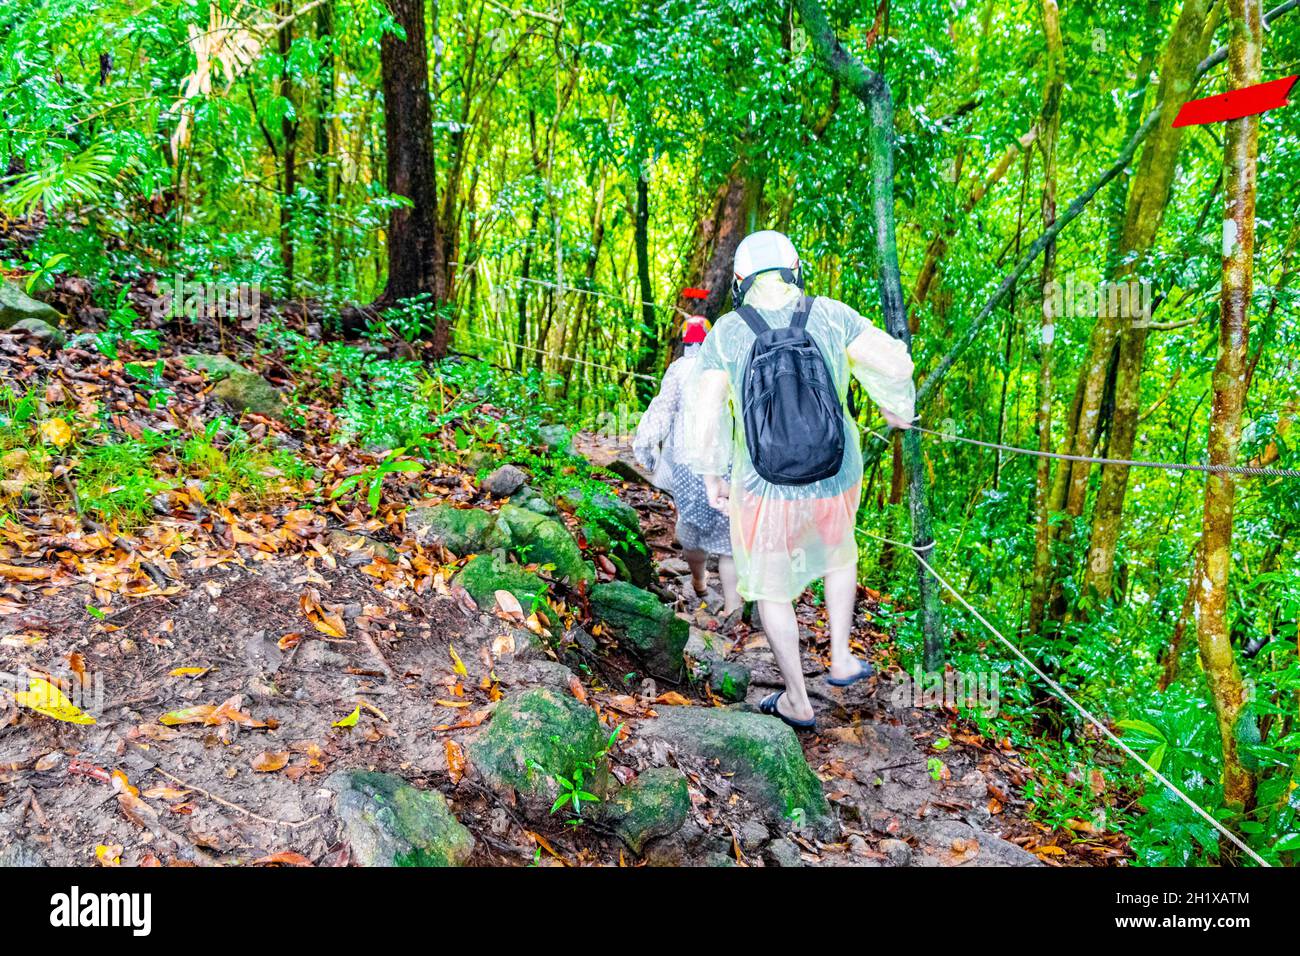 Touristen in regen Poncho und Helm Wanderungen in tropischen Dschungel Wald Wanderweg und Pfad auf Koh Samui in Surat Thani Thailand. Stockfoto